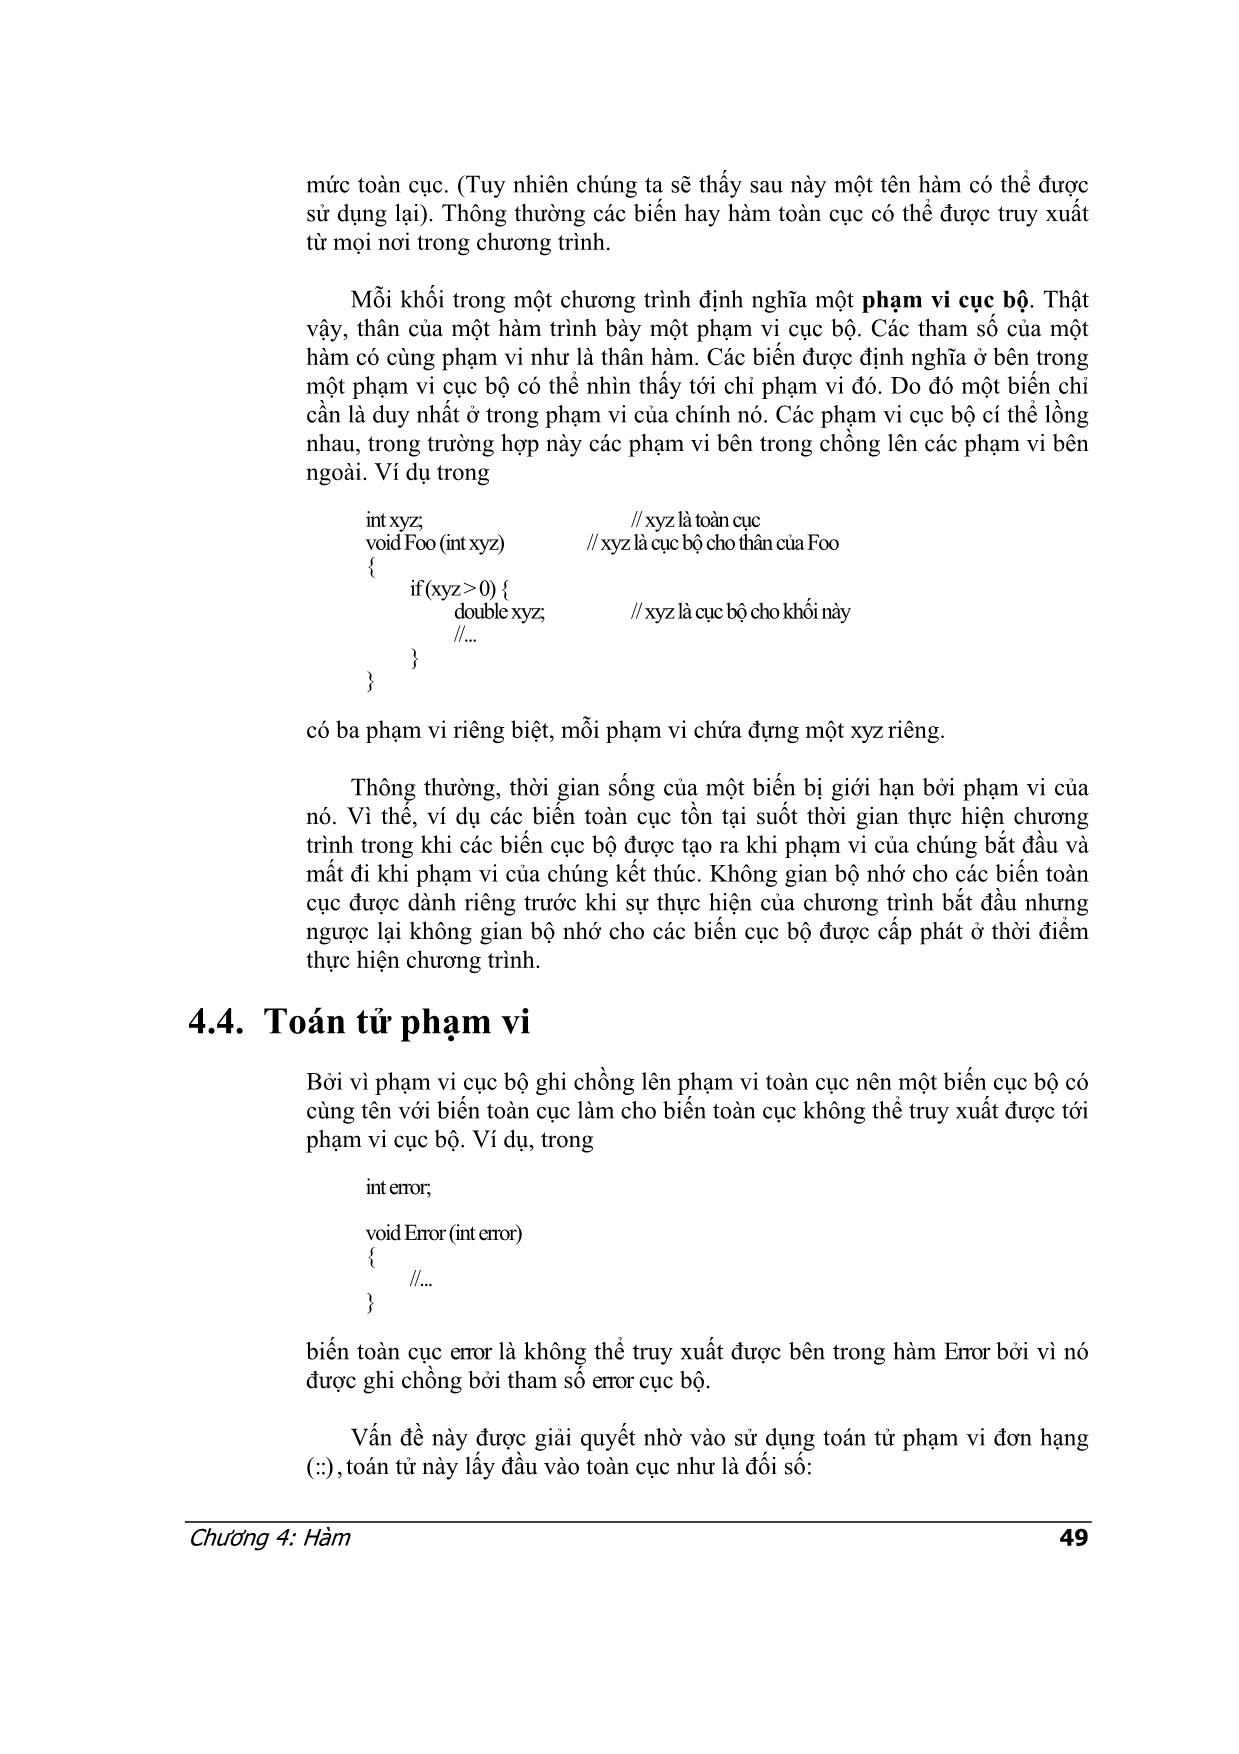 Lập trình C++ - Chương 4: Hàm trang 5